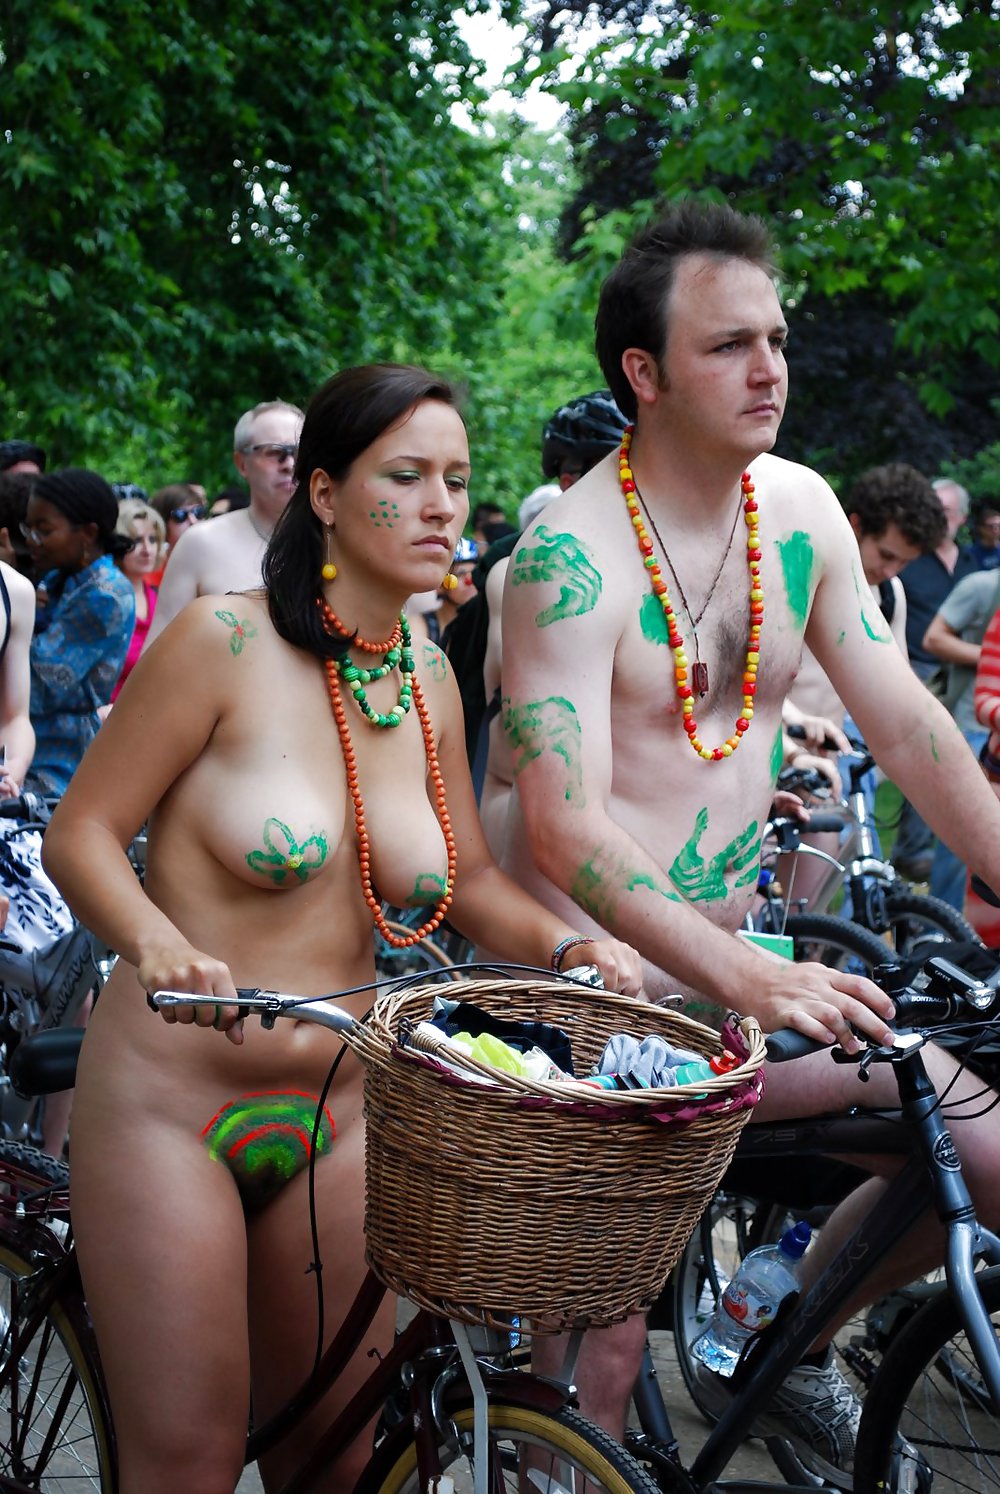 Naked girls on bikes #10797418